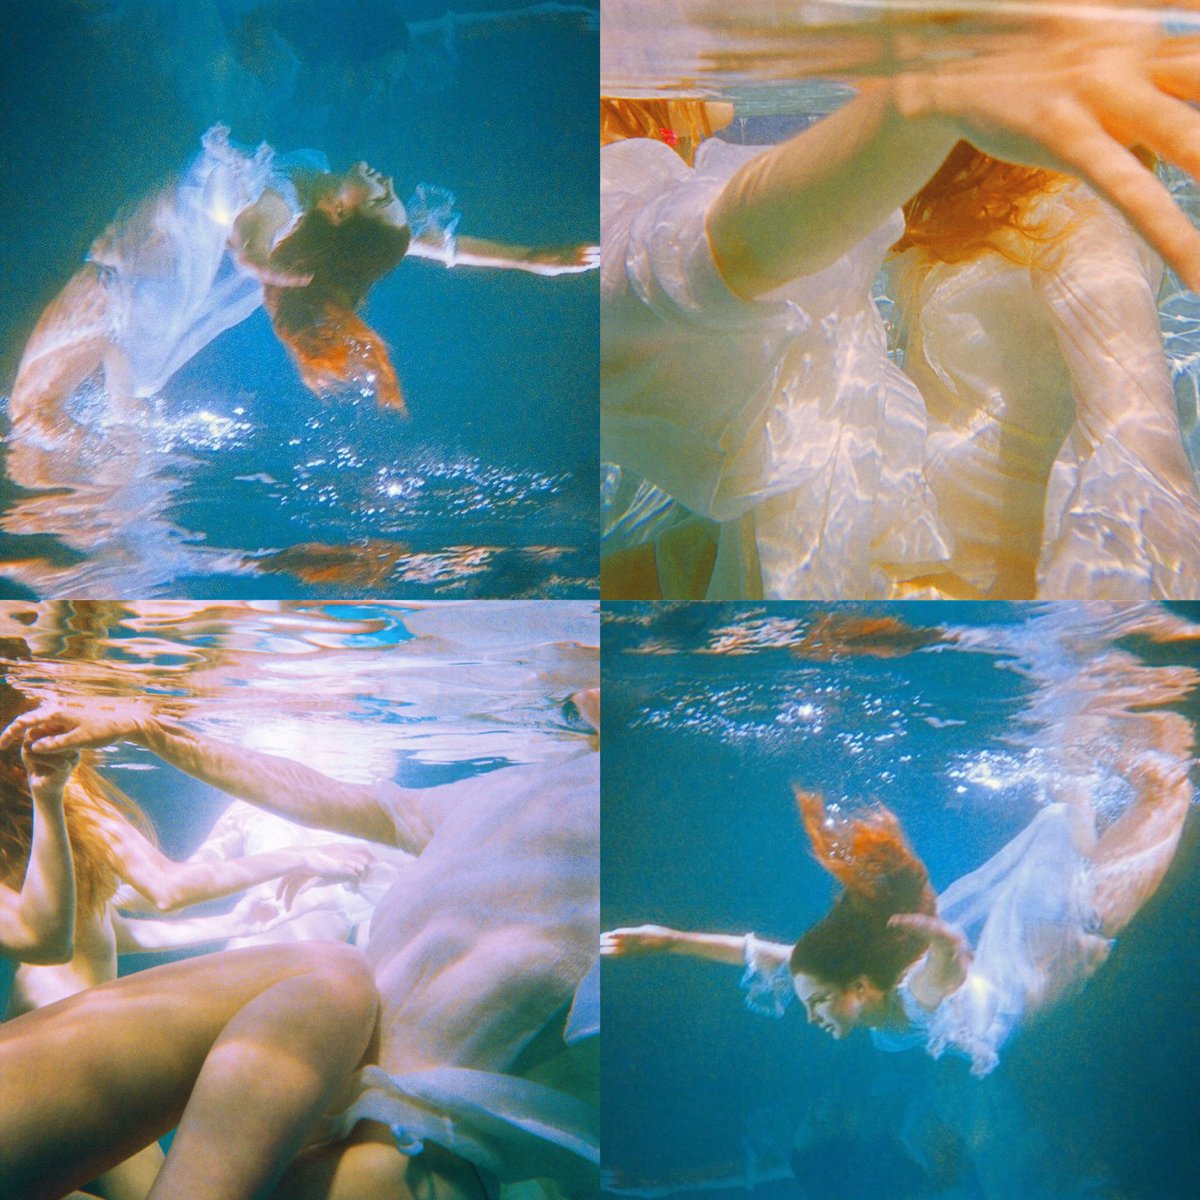 lana del rey for the 'freak' music video (2015)